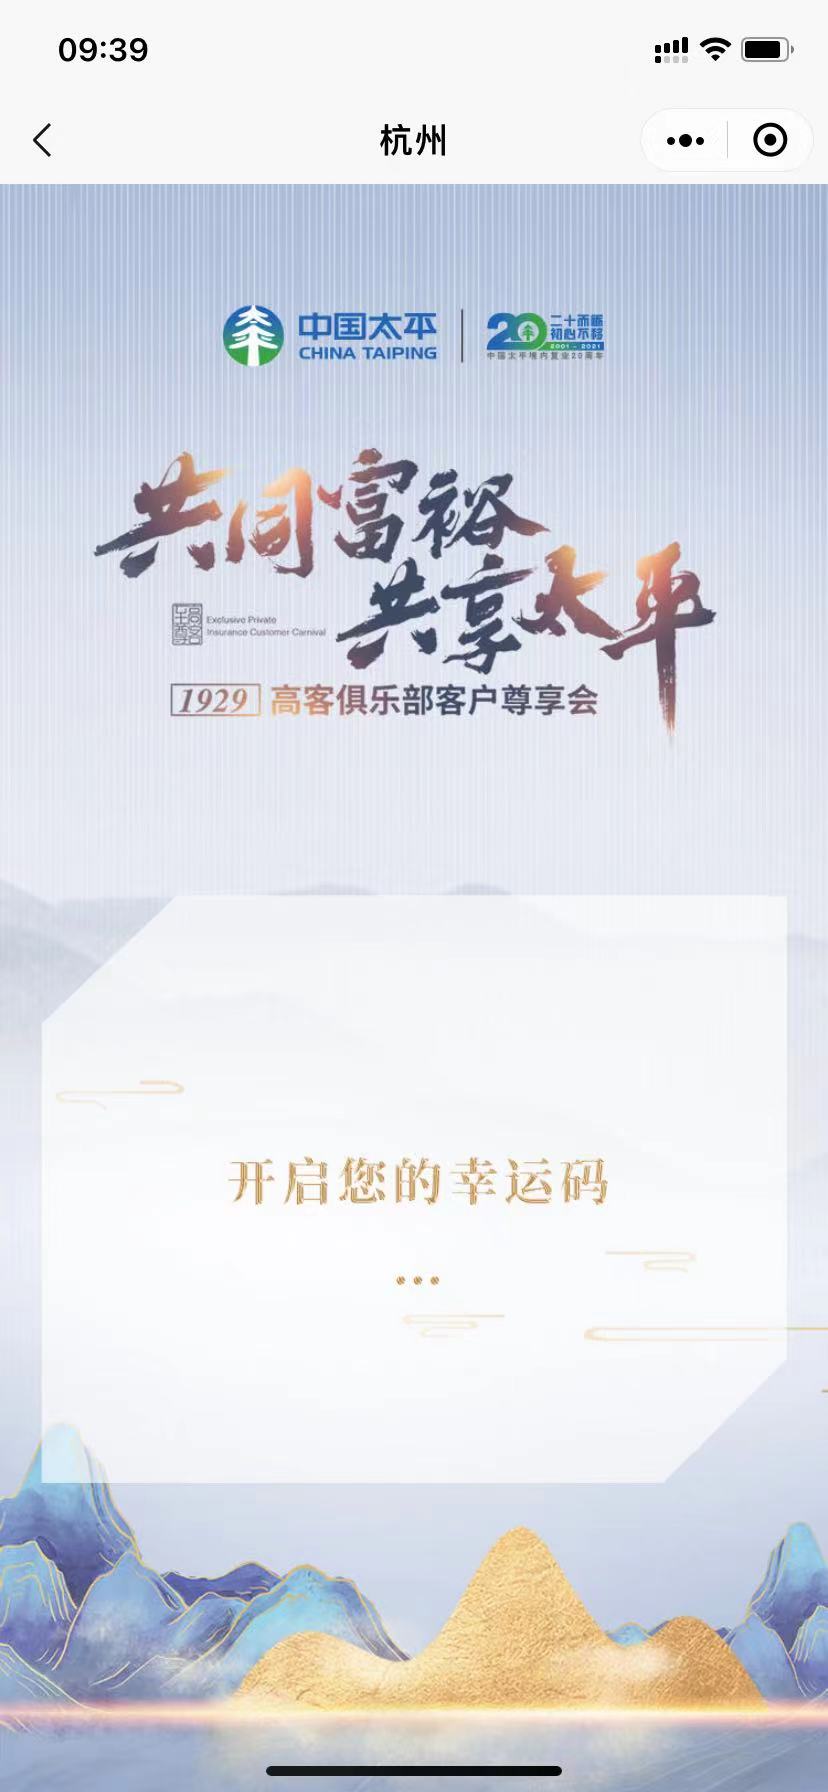 線(xiàn)下展覽活動簽到小遊戲